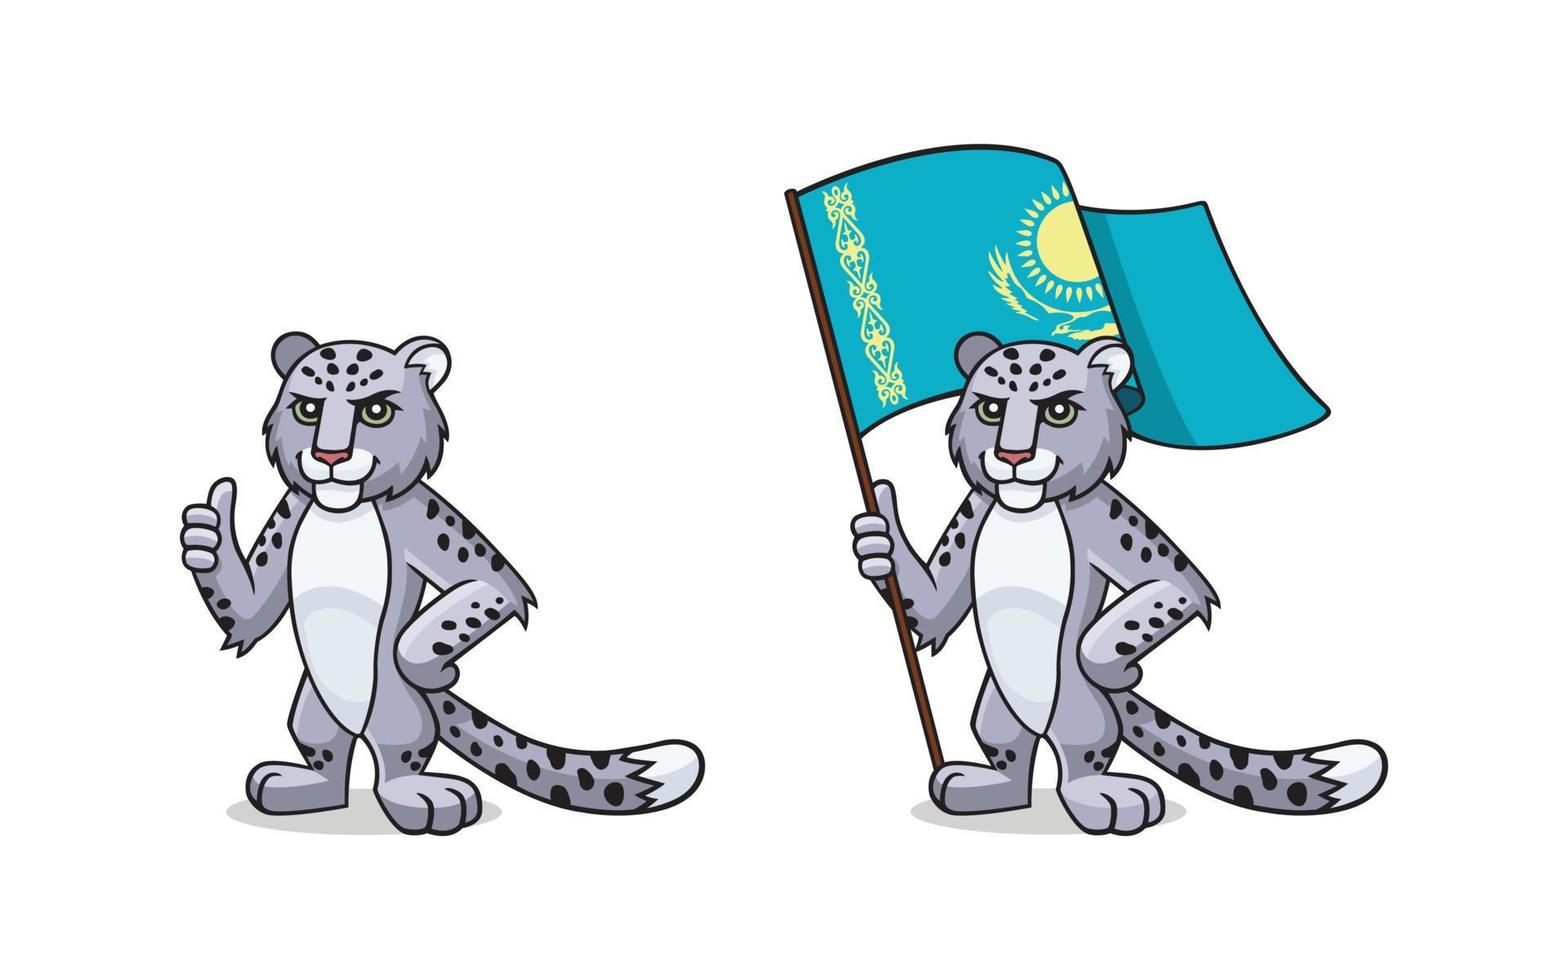 sneeuw luipaard - irbis met Kazachstan vlag is tonen duim omhoog. karakter, mascotte, symbool, teken van Kazachstan. reeks van sneeuw luipaarden vector